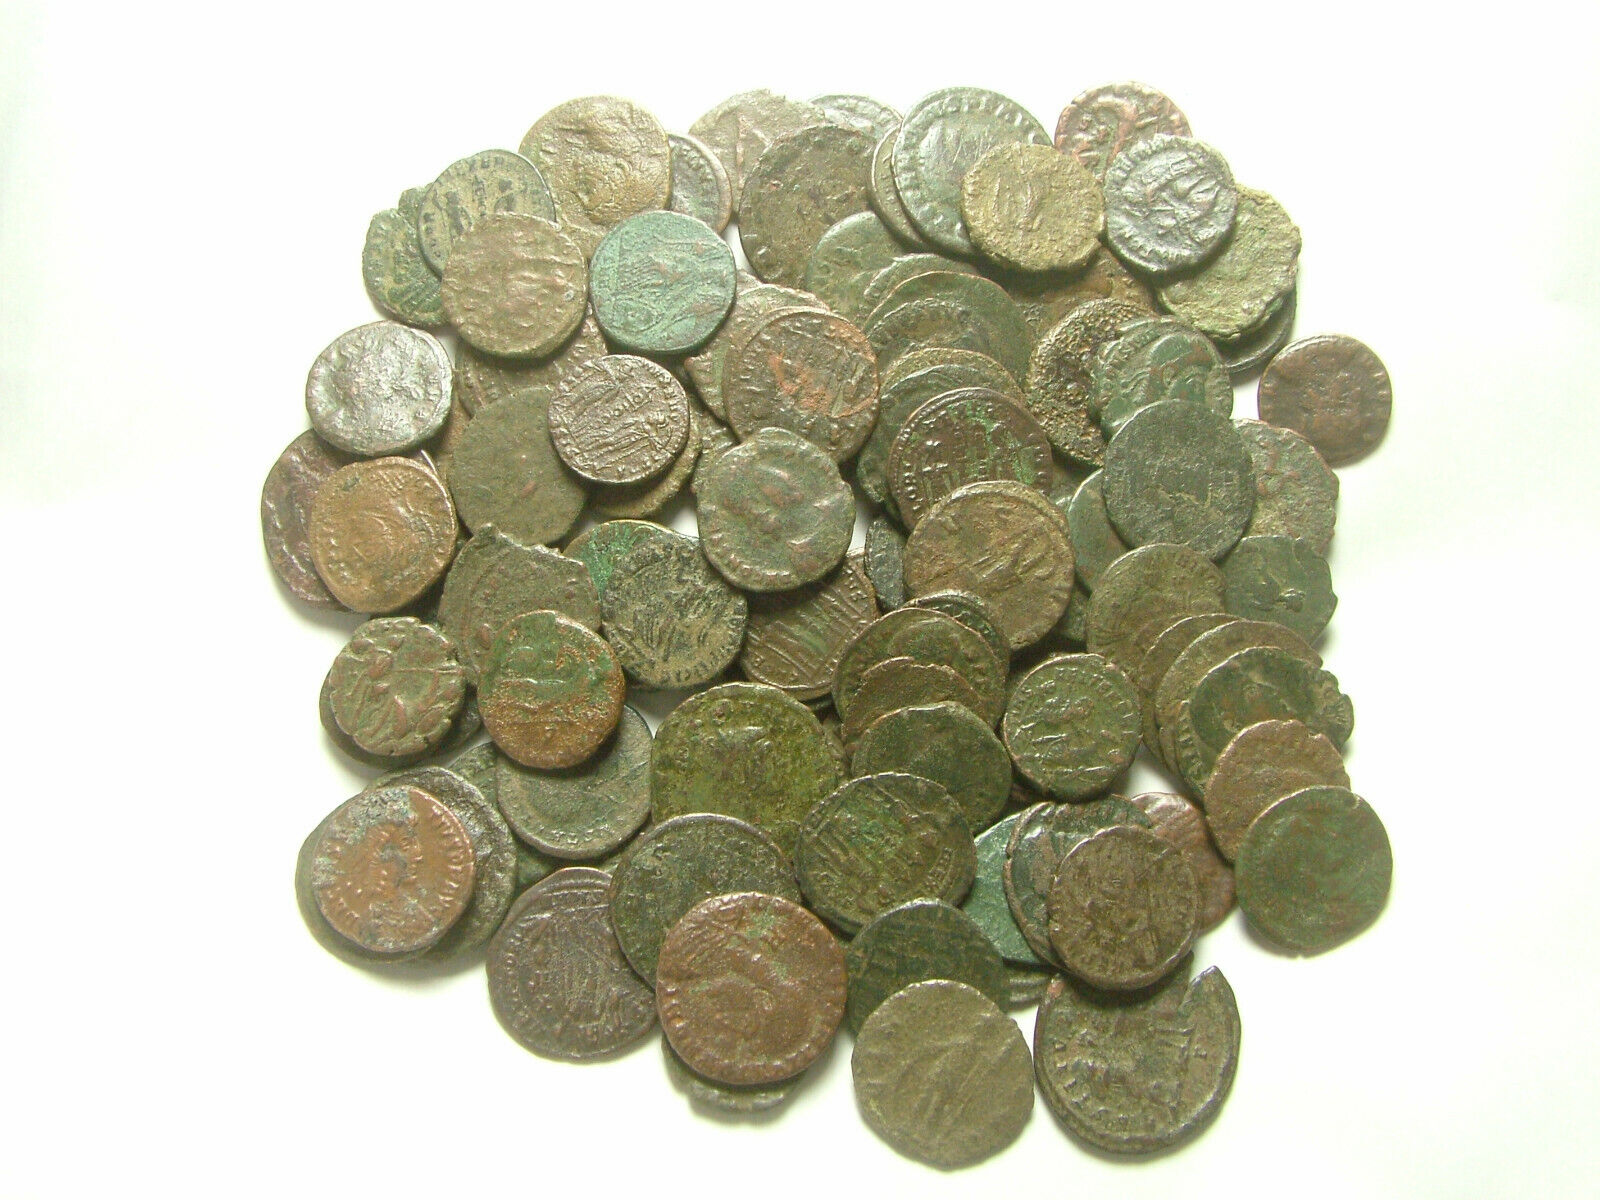 Lot genuine Ancient Roman coins Constantine/Valens/Constantius/Licinius/Claudius Без бренда - фотография #4